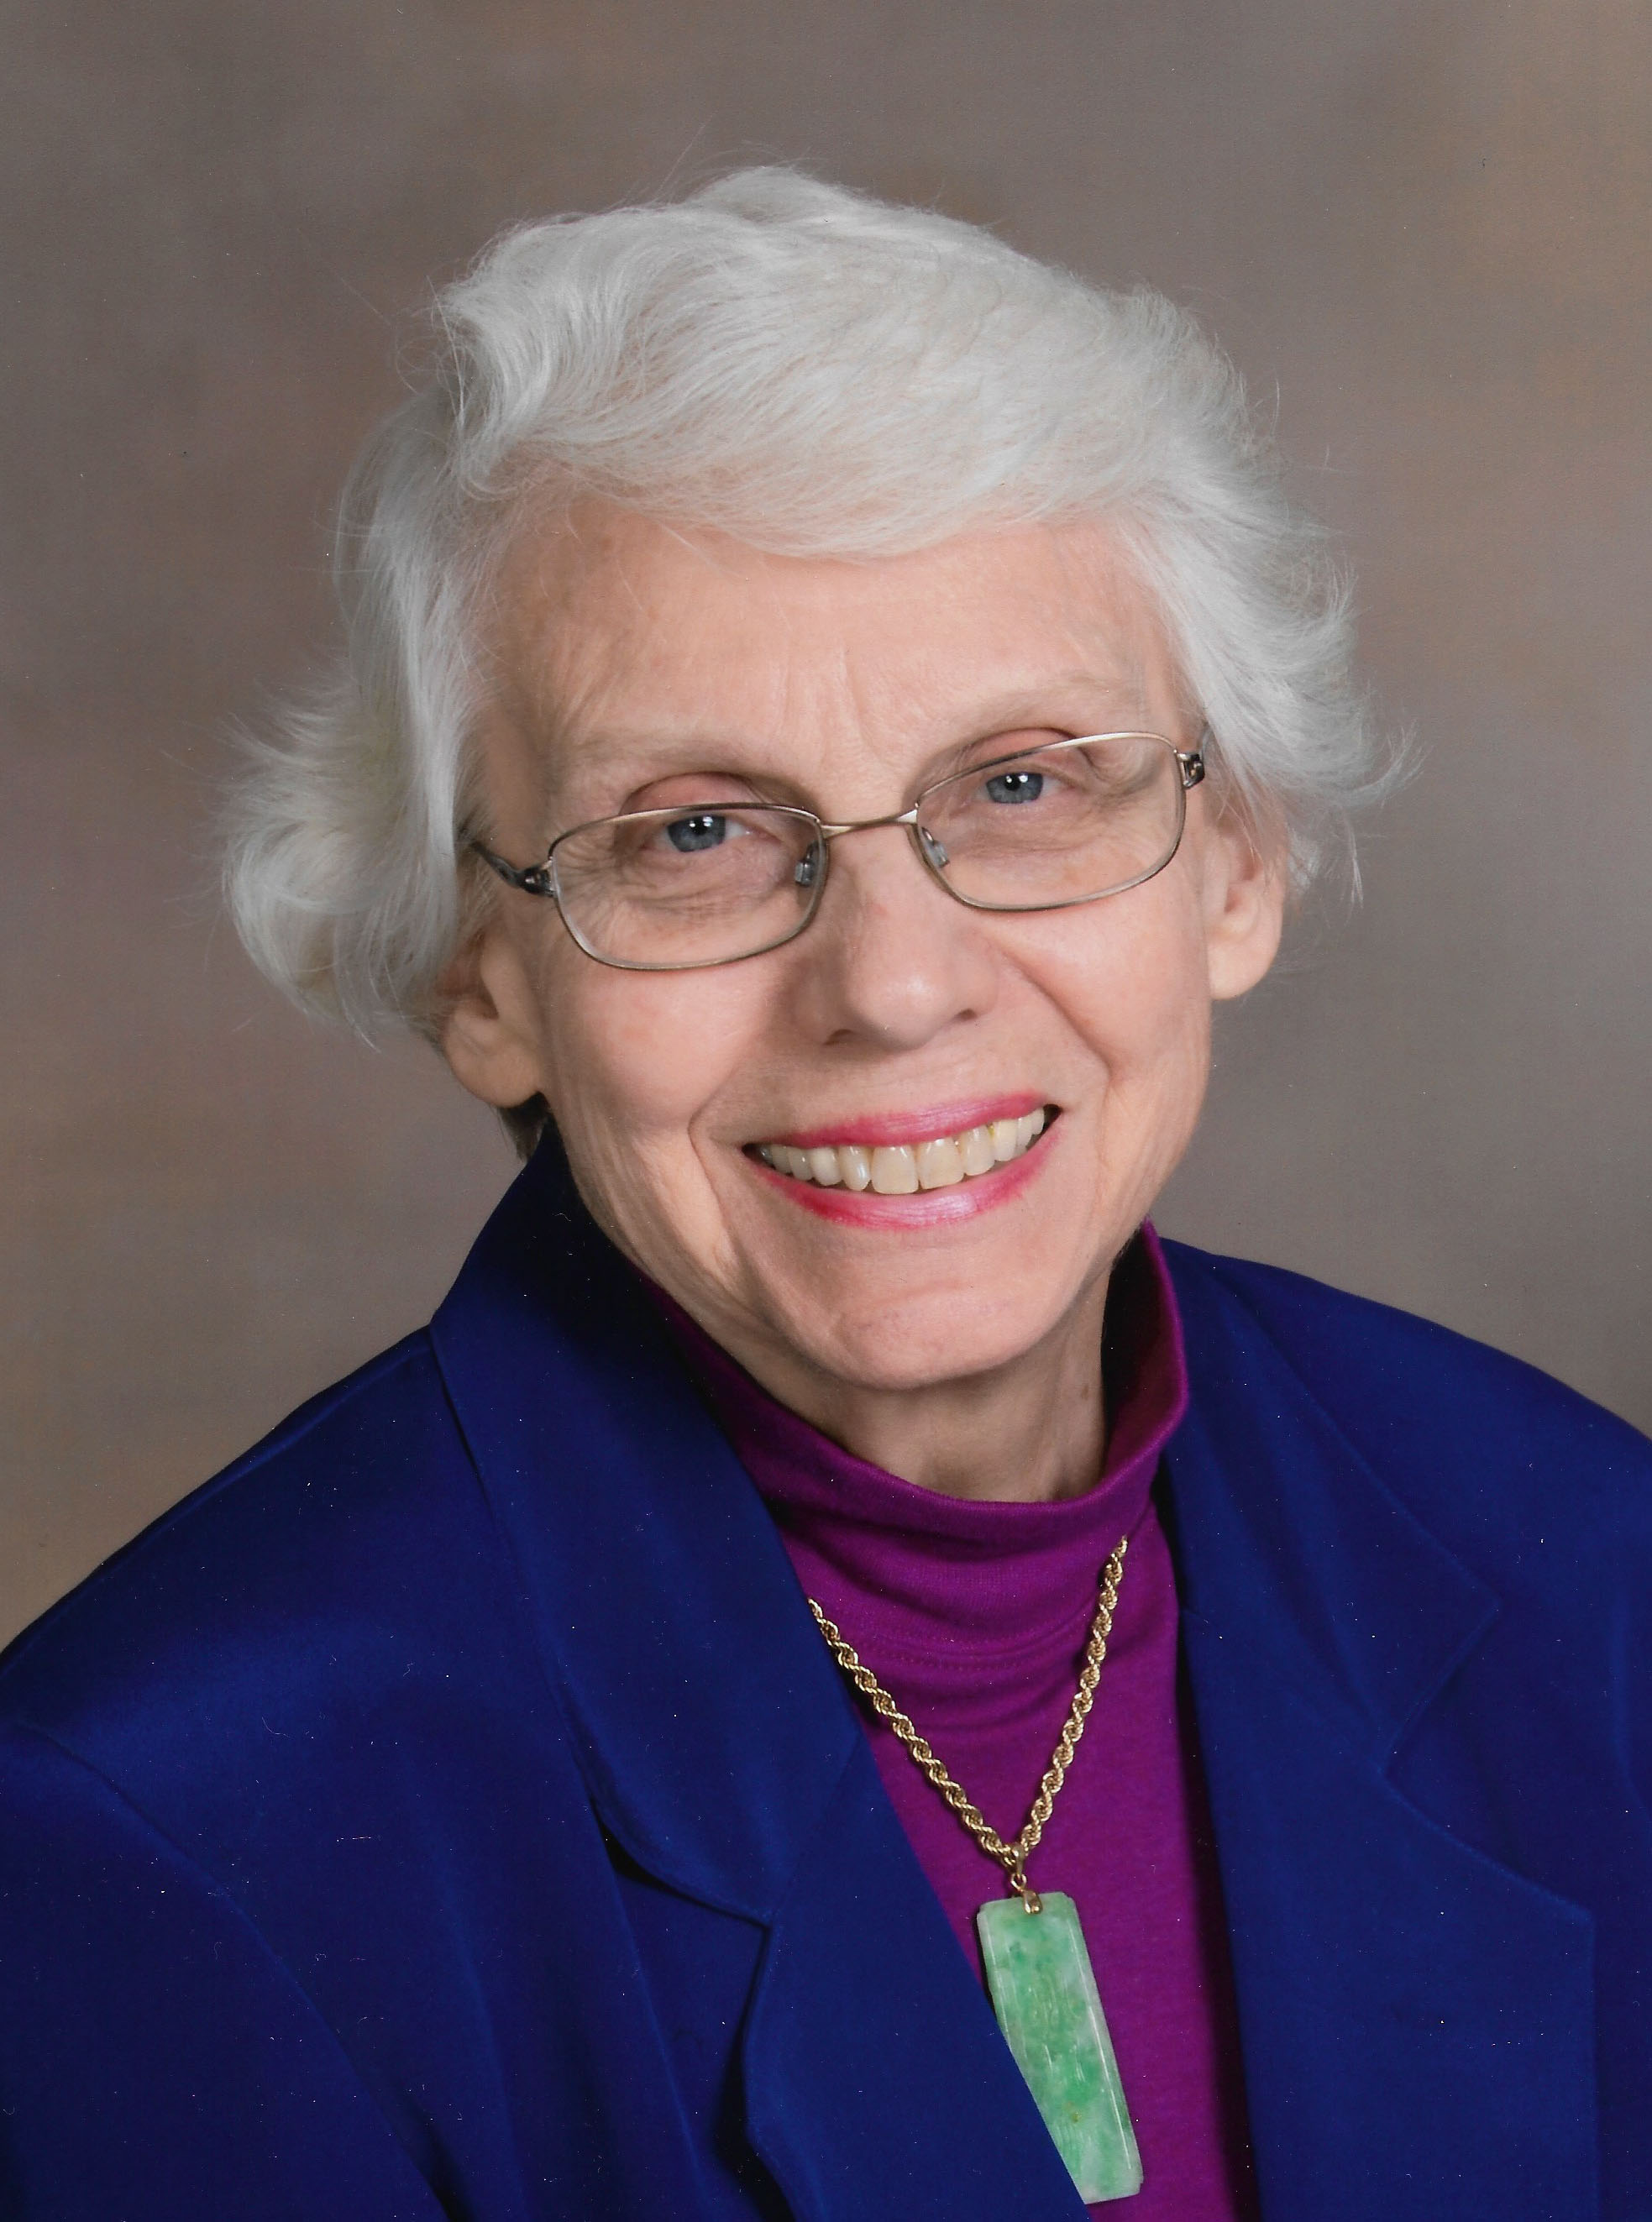 Image of Nancy K. Welker, Ph.D., taken from Maryland Women's Hall of Fame Program.